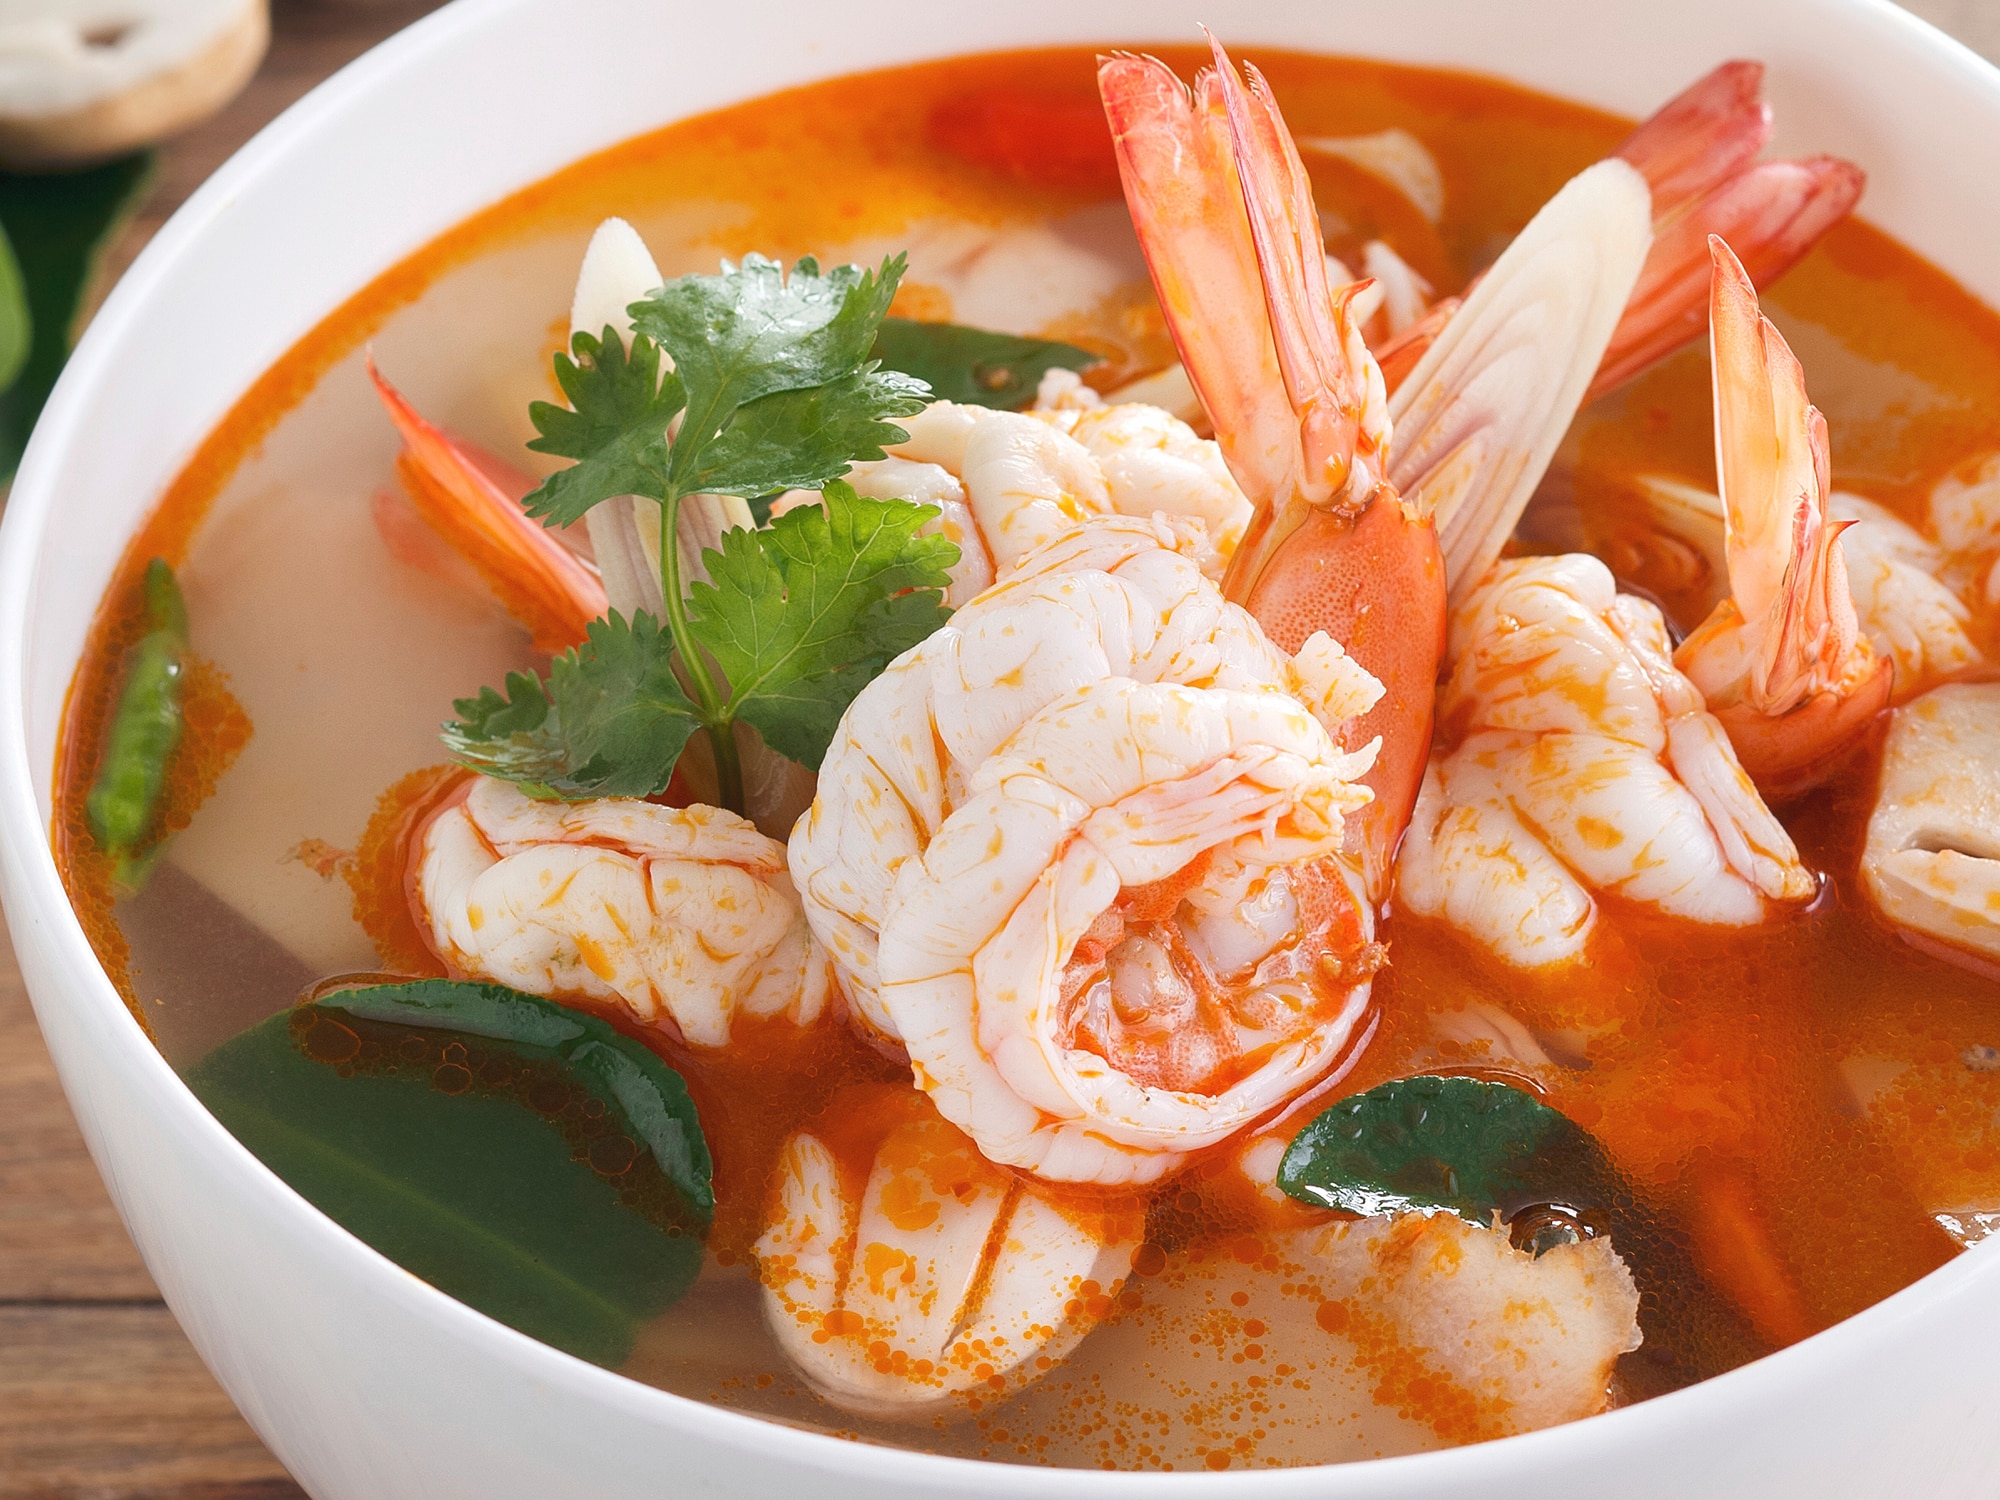 Discover Thai recipes